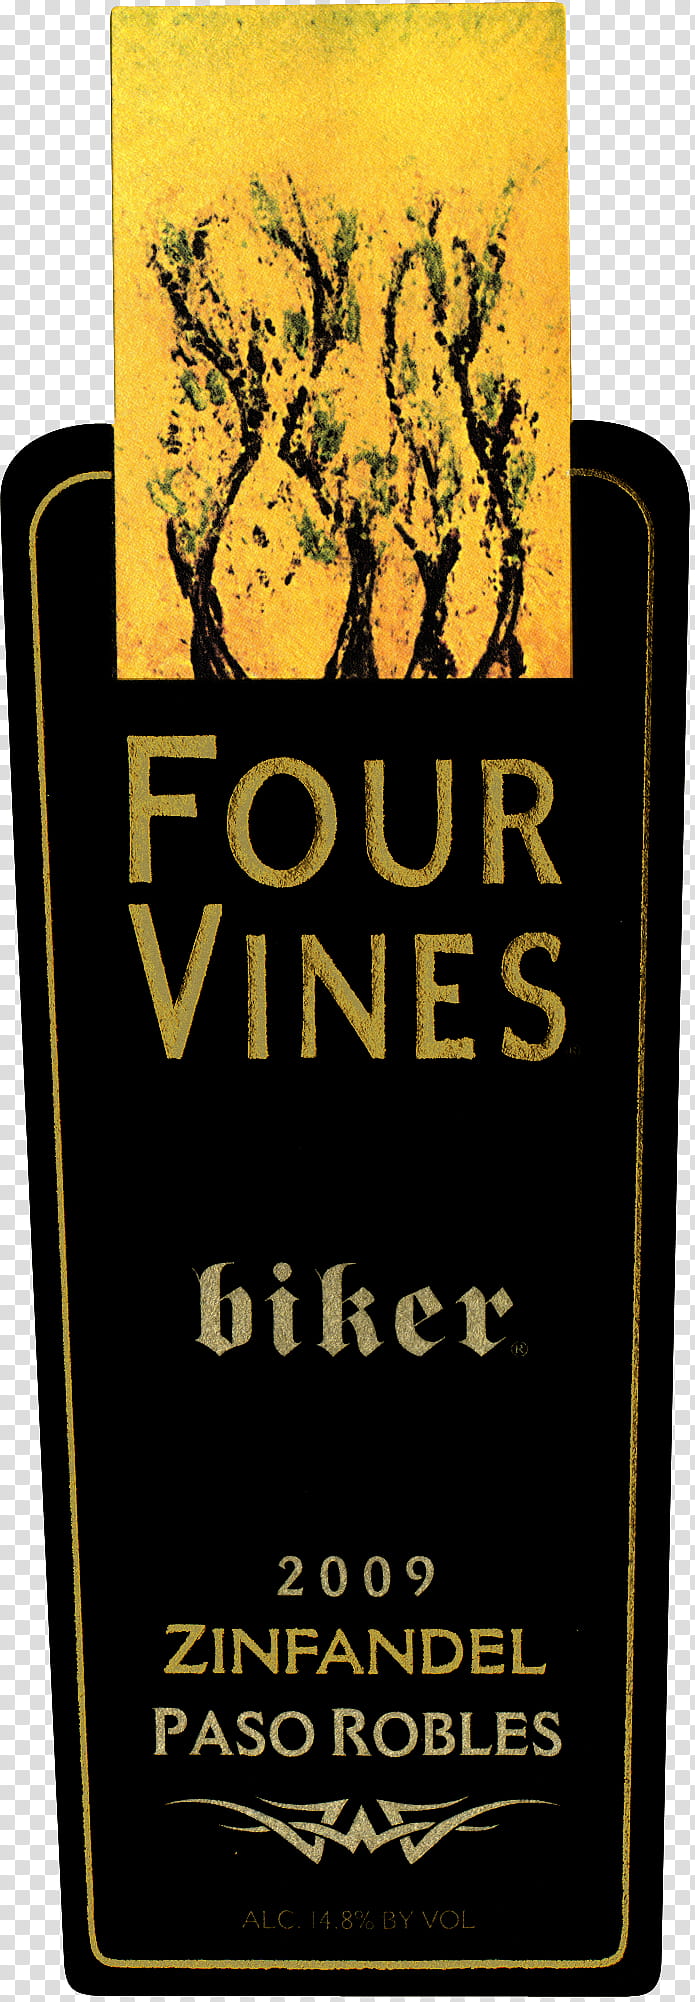 Vine, Sonoma County California, Zinfandel, Old Vine, Bottle, Label transparent background PNG clipart